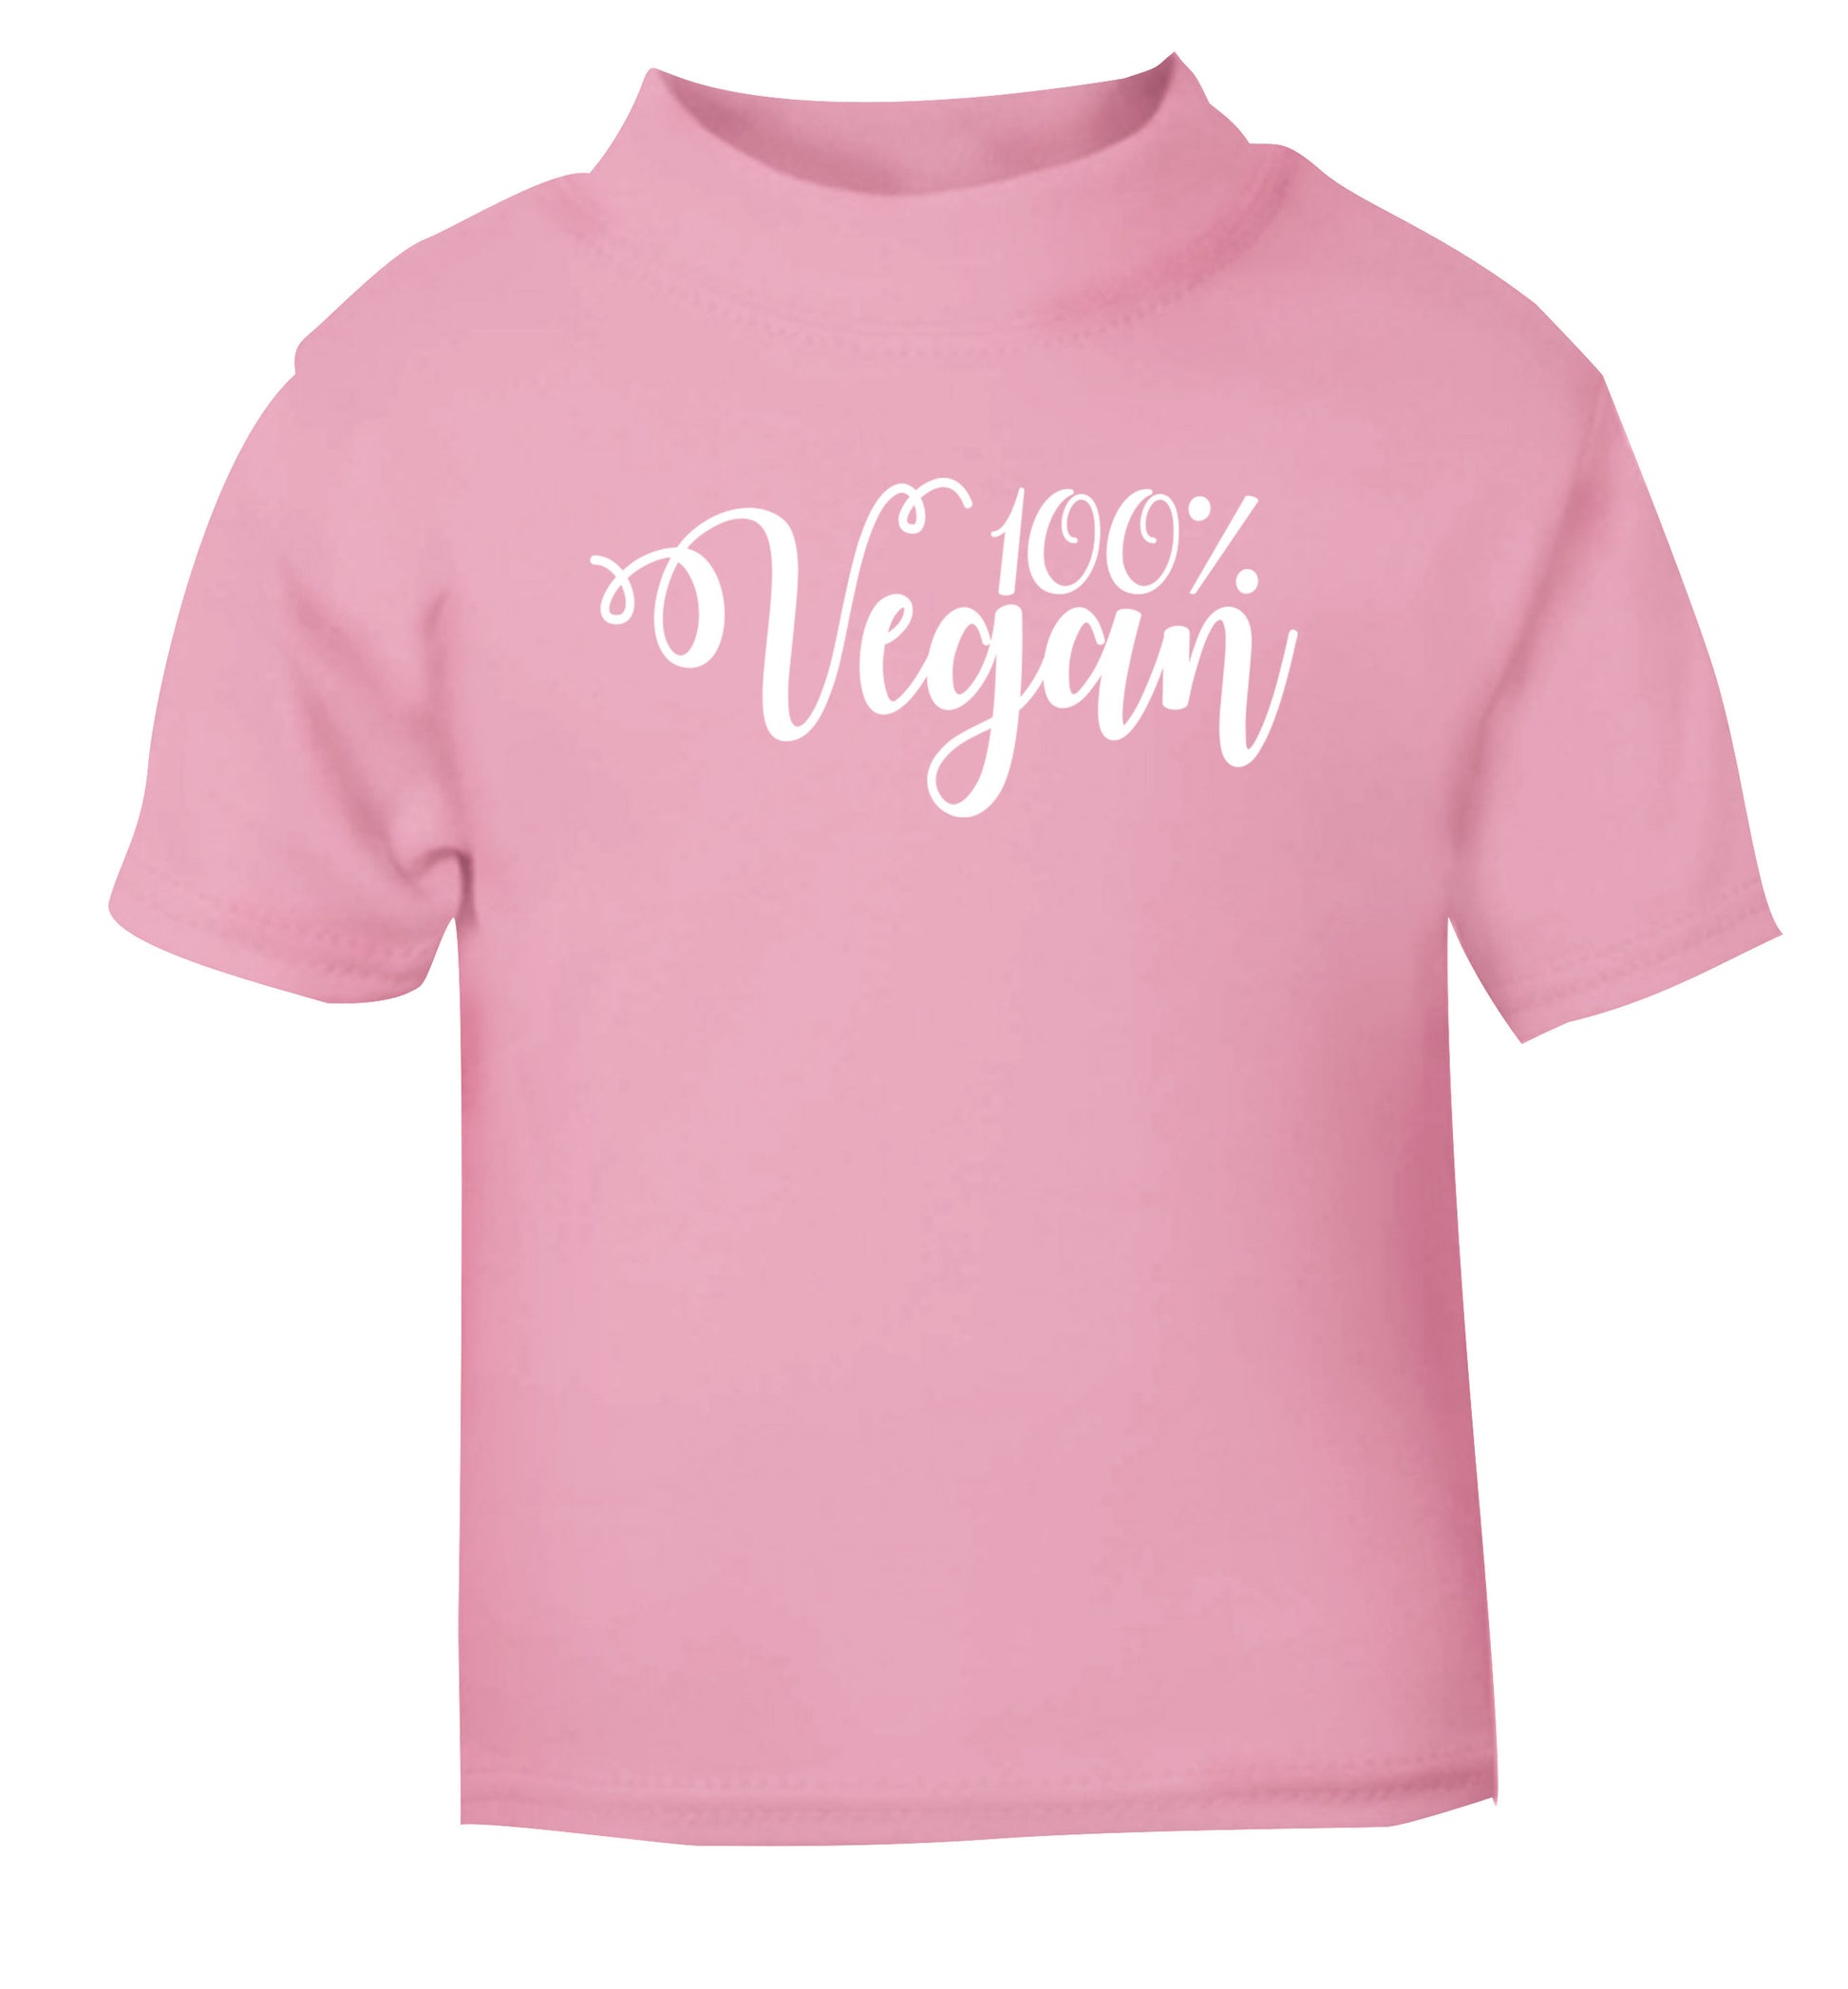 100% Vegan light pink Baby Toddler Tshirt 2 Years